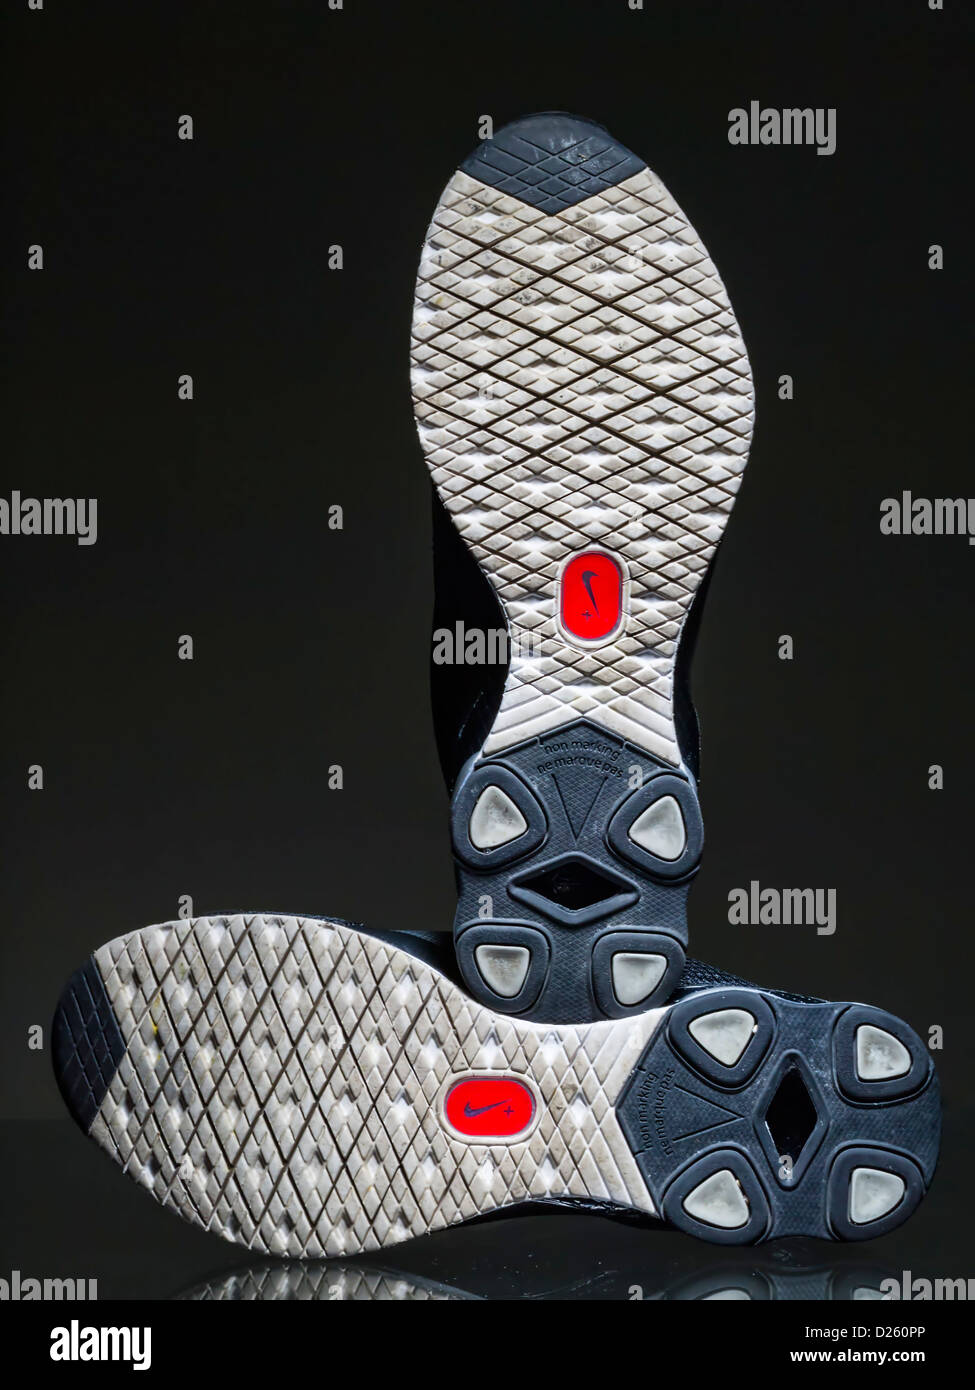 Capteur Nike + logo sur les semelles des chaussures de course Photo Stock -  Alamy